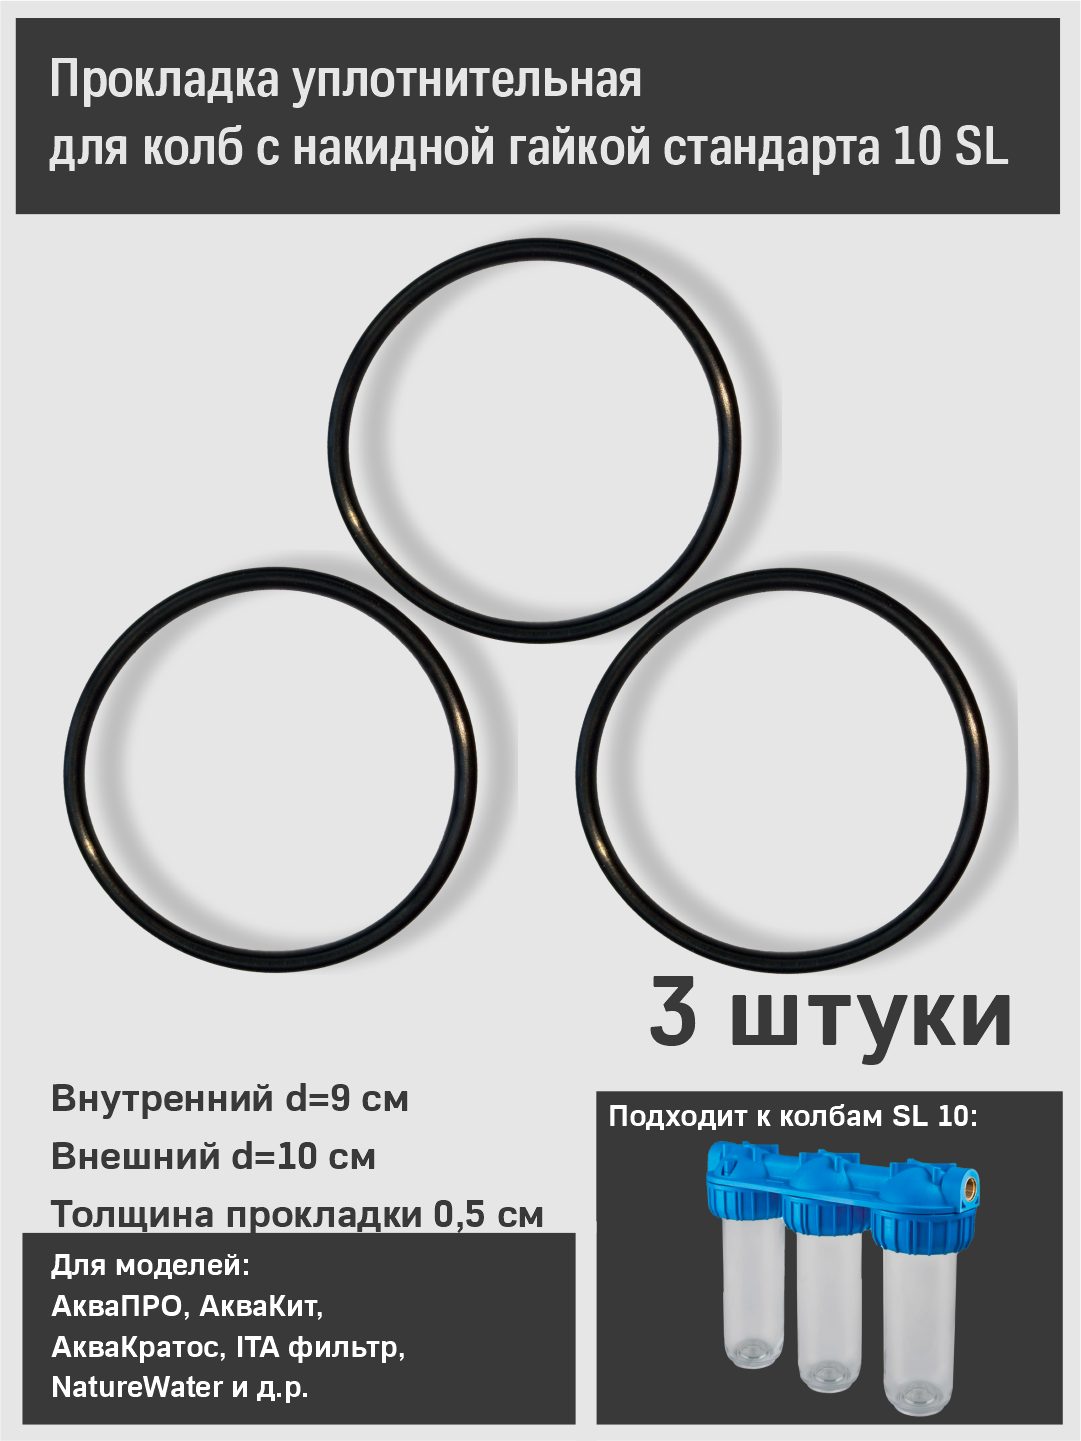 Уплотнительное кольцо (прокладка) для корпуса фильтра стандарта 10 SL с накидной гайкой аквапро, Raifil , Aqua kit, ITA filter и др. 3 штуки комплект